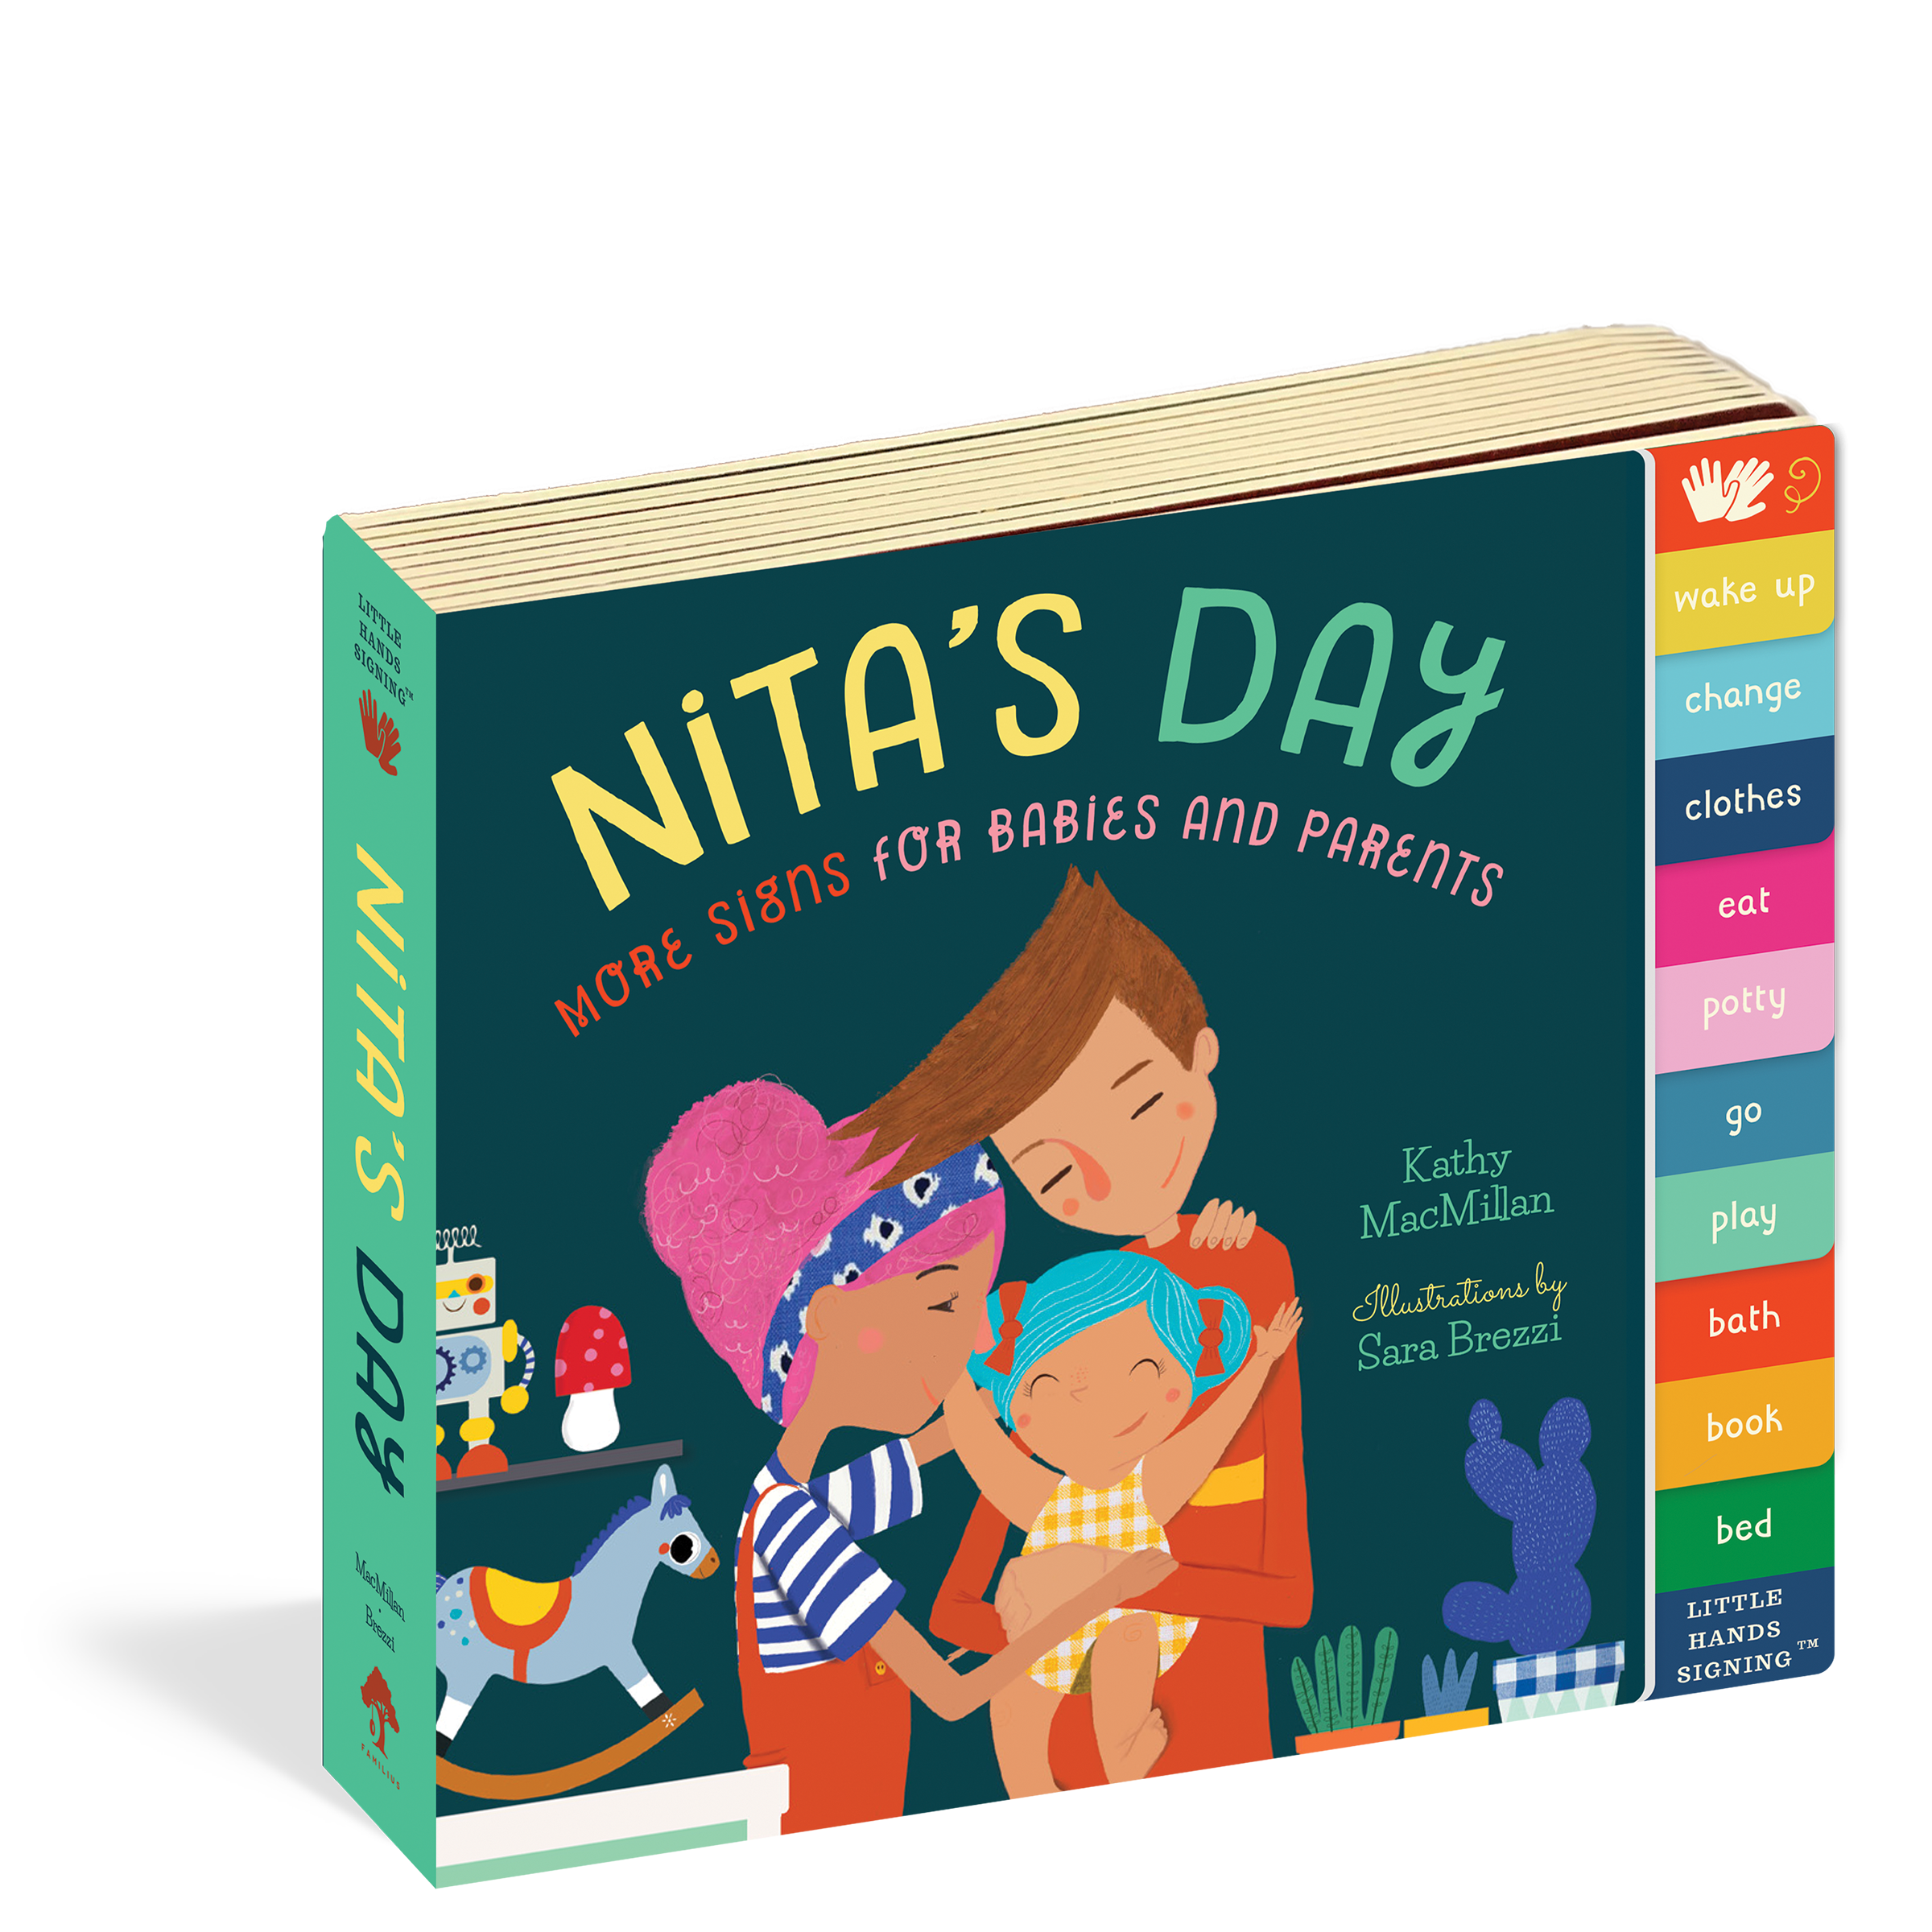 Nita's Day